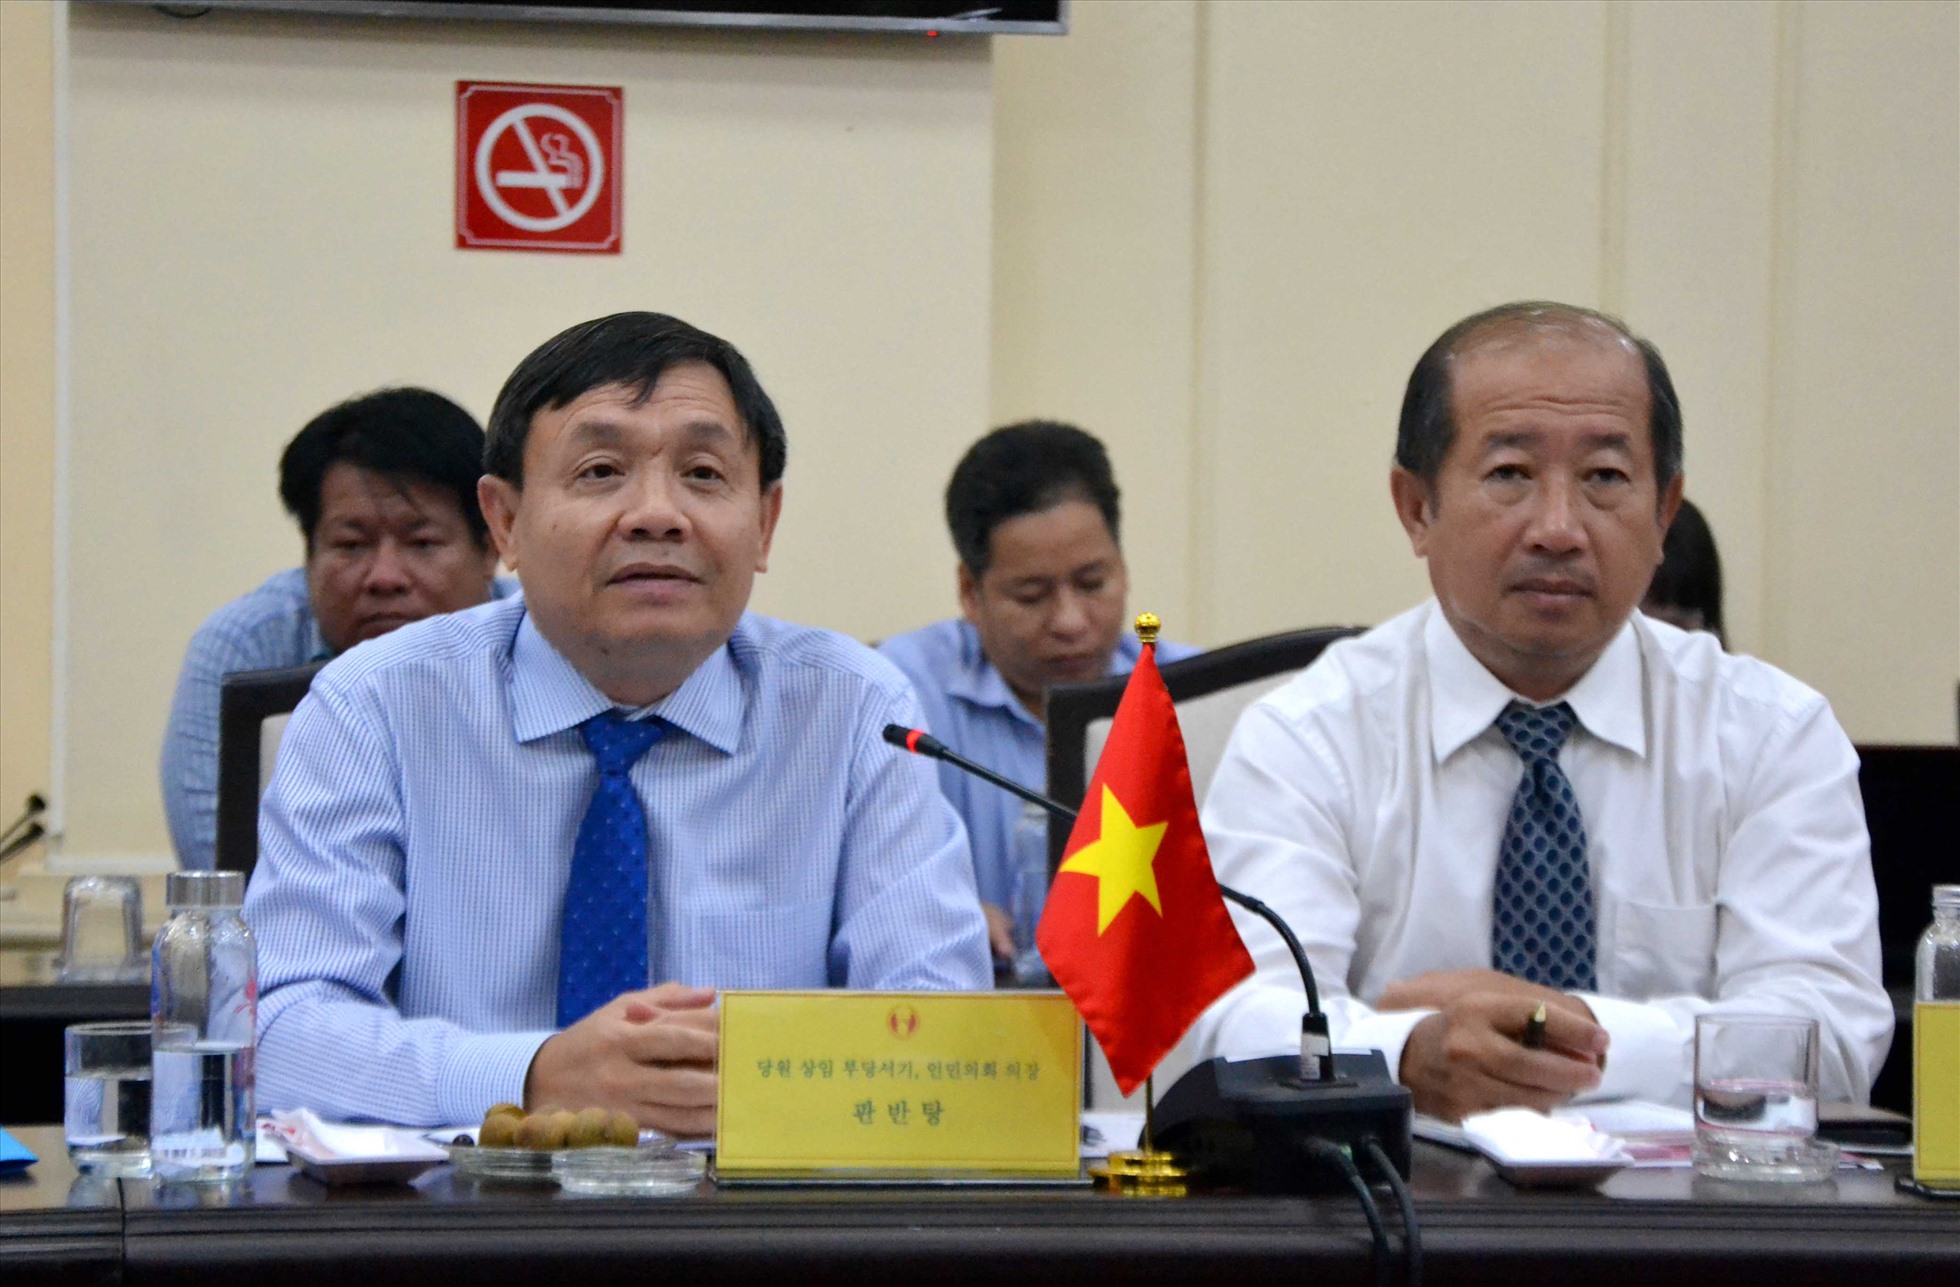 Ông Phan Văn Thắng (trái) và ông Đoàn Tấn Bửu tại buổi làm việc với đoàn công tác đến từ Hàn Quốc bàn bạc về việc hỗ trợ thành lập Trung tâm Kỹ thuật nông nghiệp. Ảnh: Lâm Điền